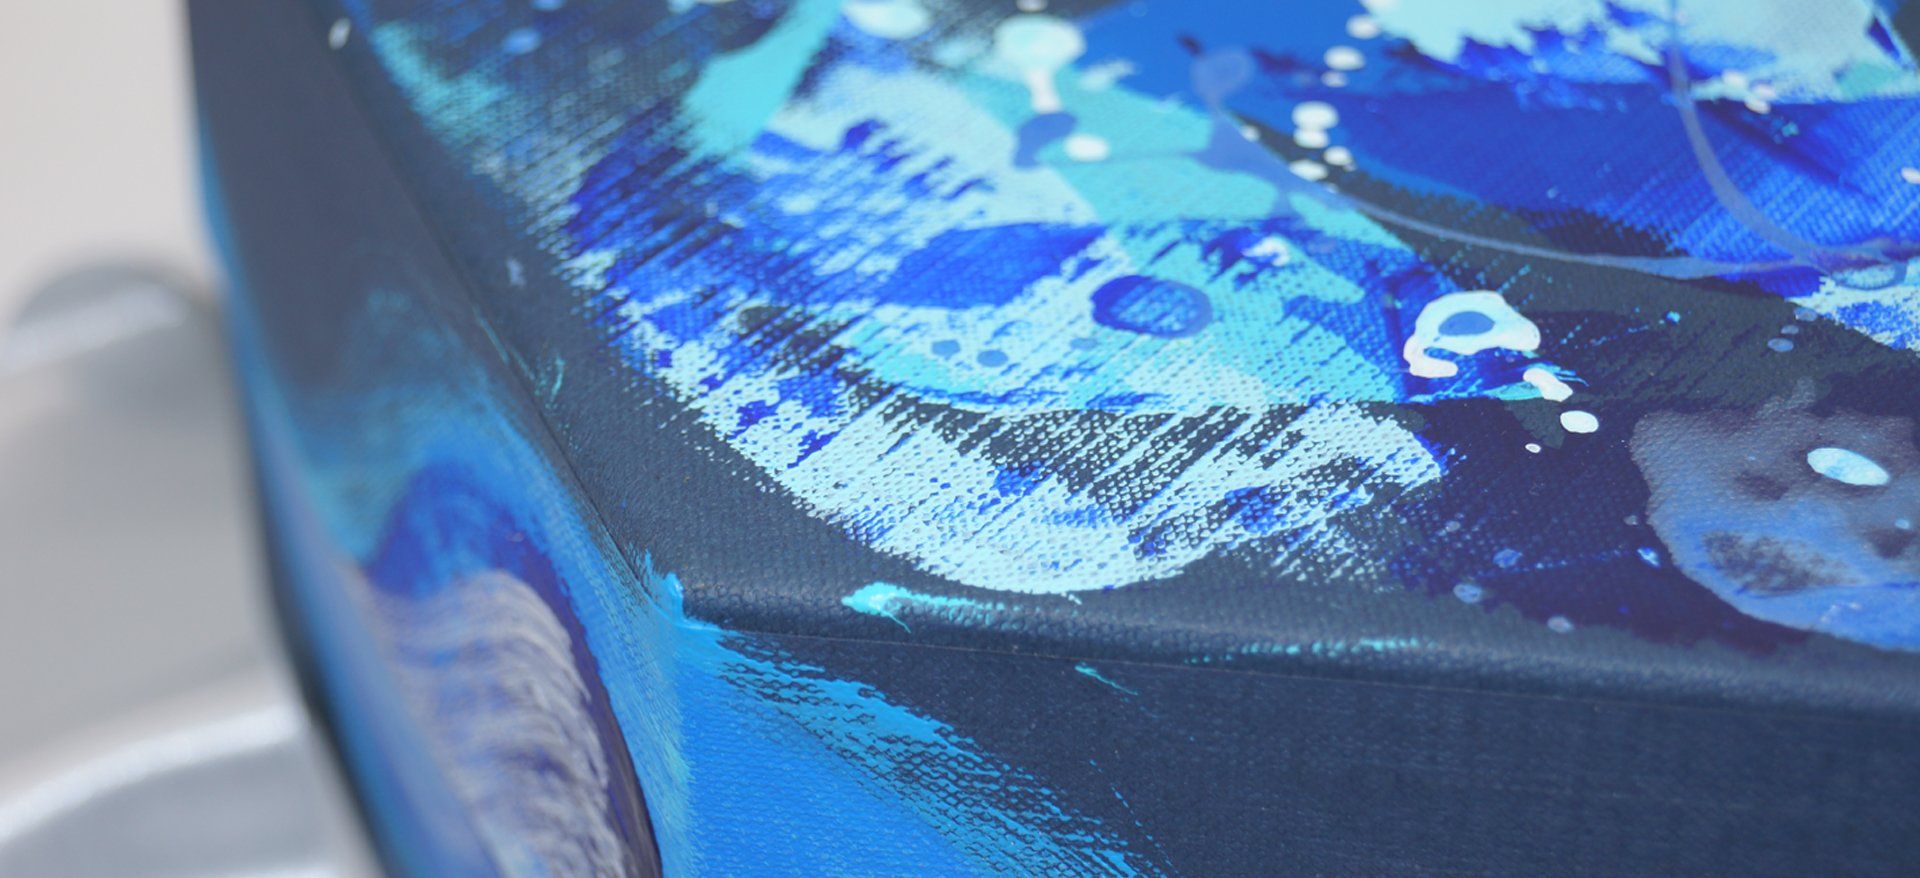 Scatola rivestita con particolare di pittura a mano su carta telata blu cobalto